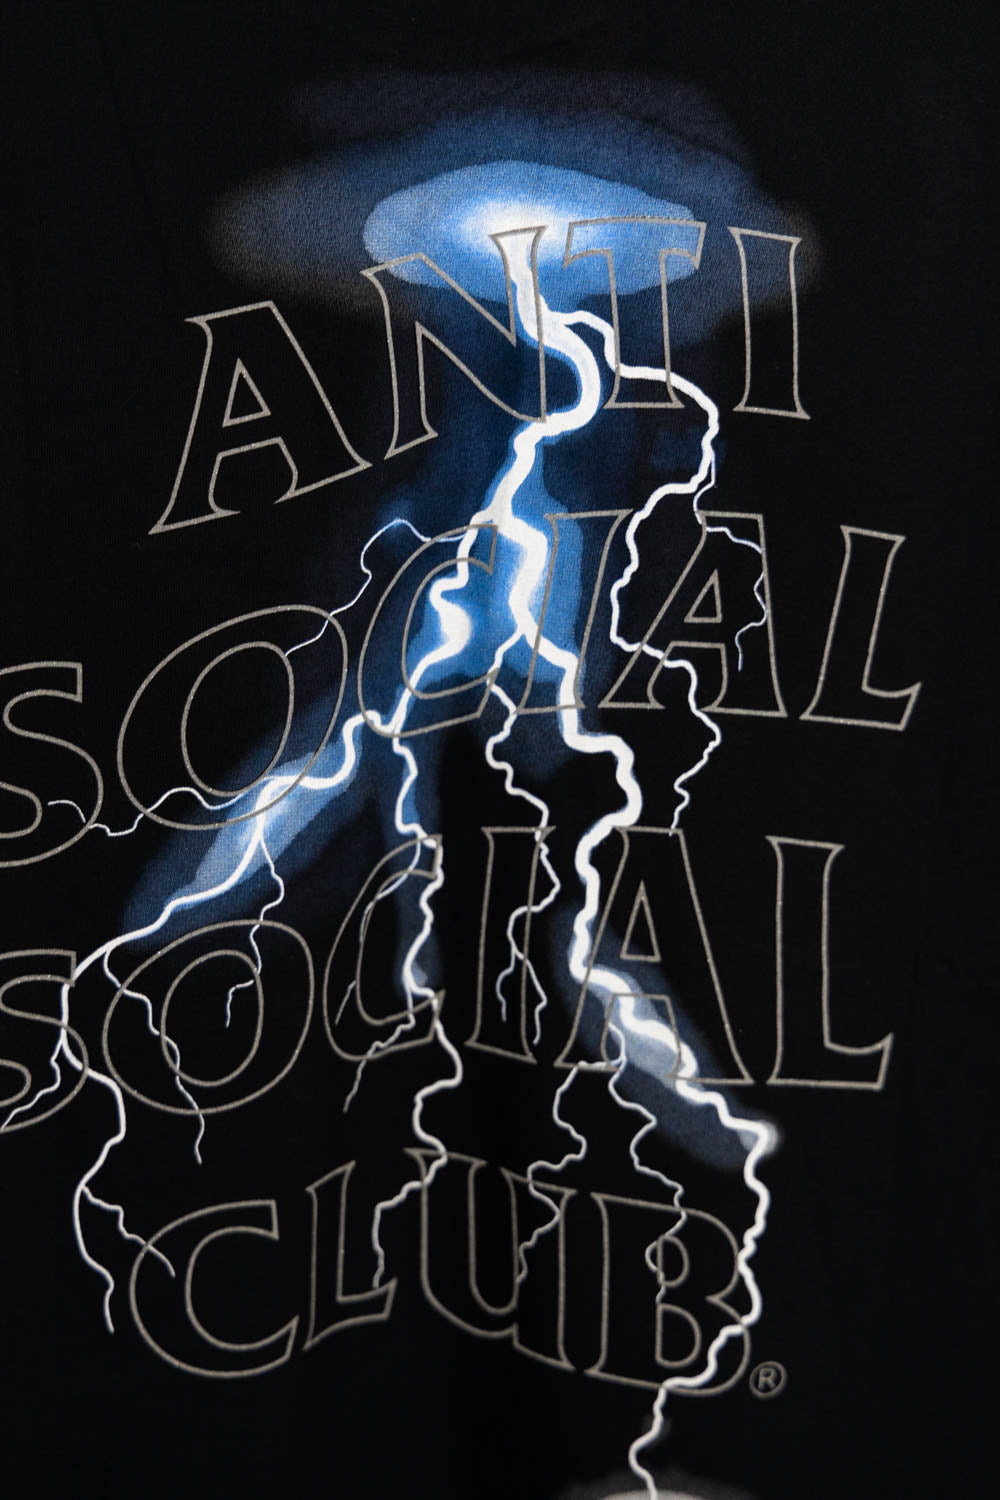 Anti Social Social Club Twister Tee (FW19) Black